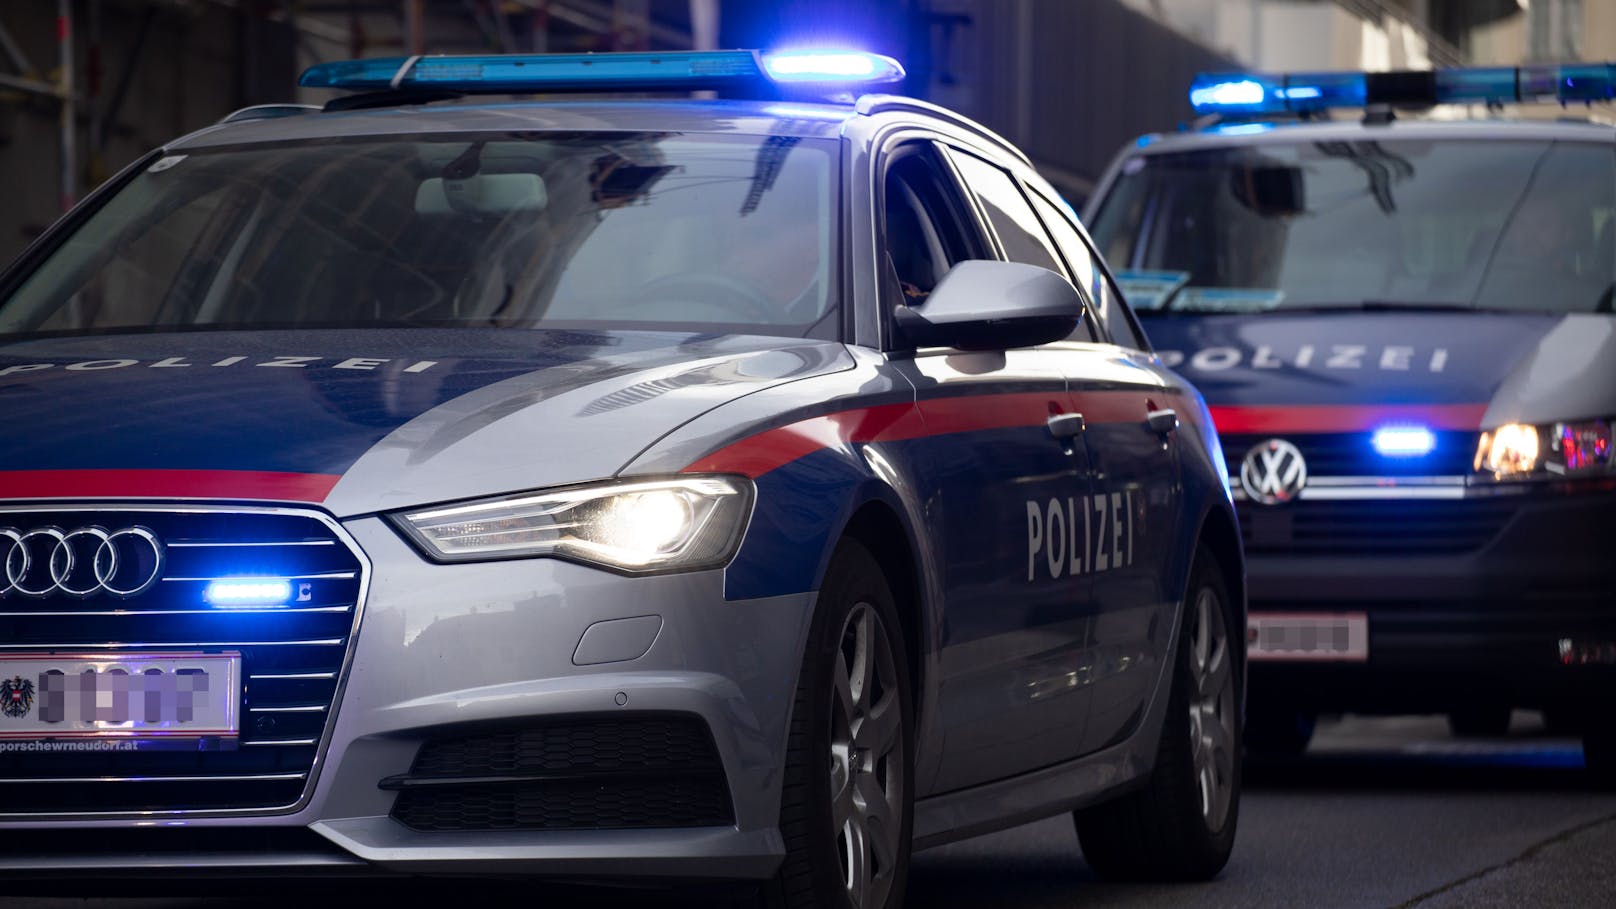 Fahrzeuge der Wiener Polizei im Einsatz. (Symbolbild)